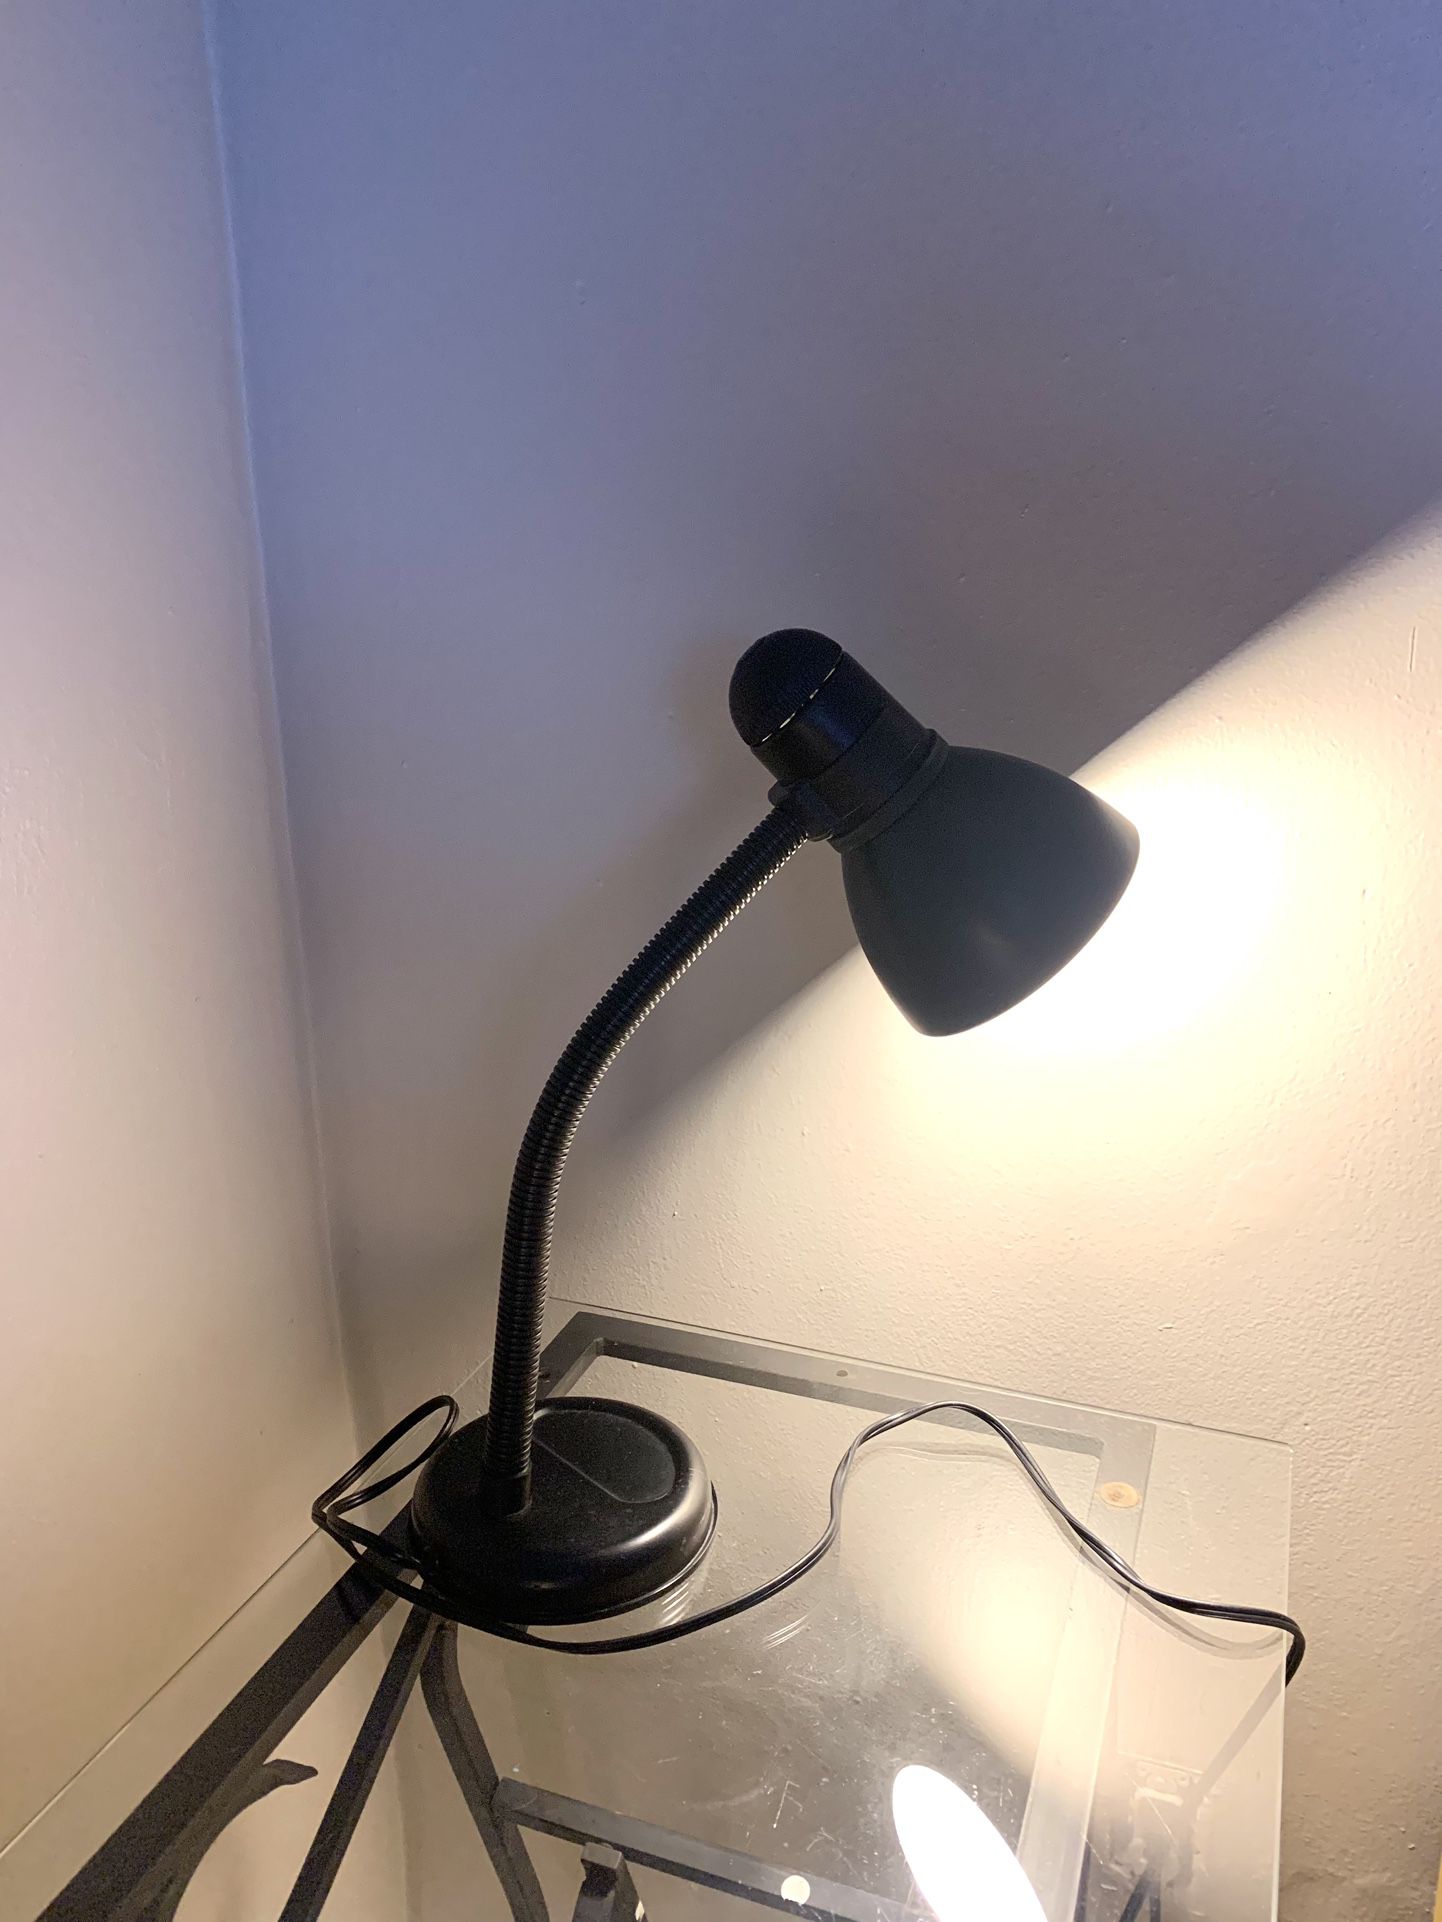 Desk Nightstand Lamp - Lampara